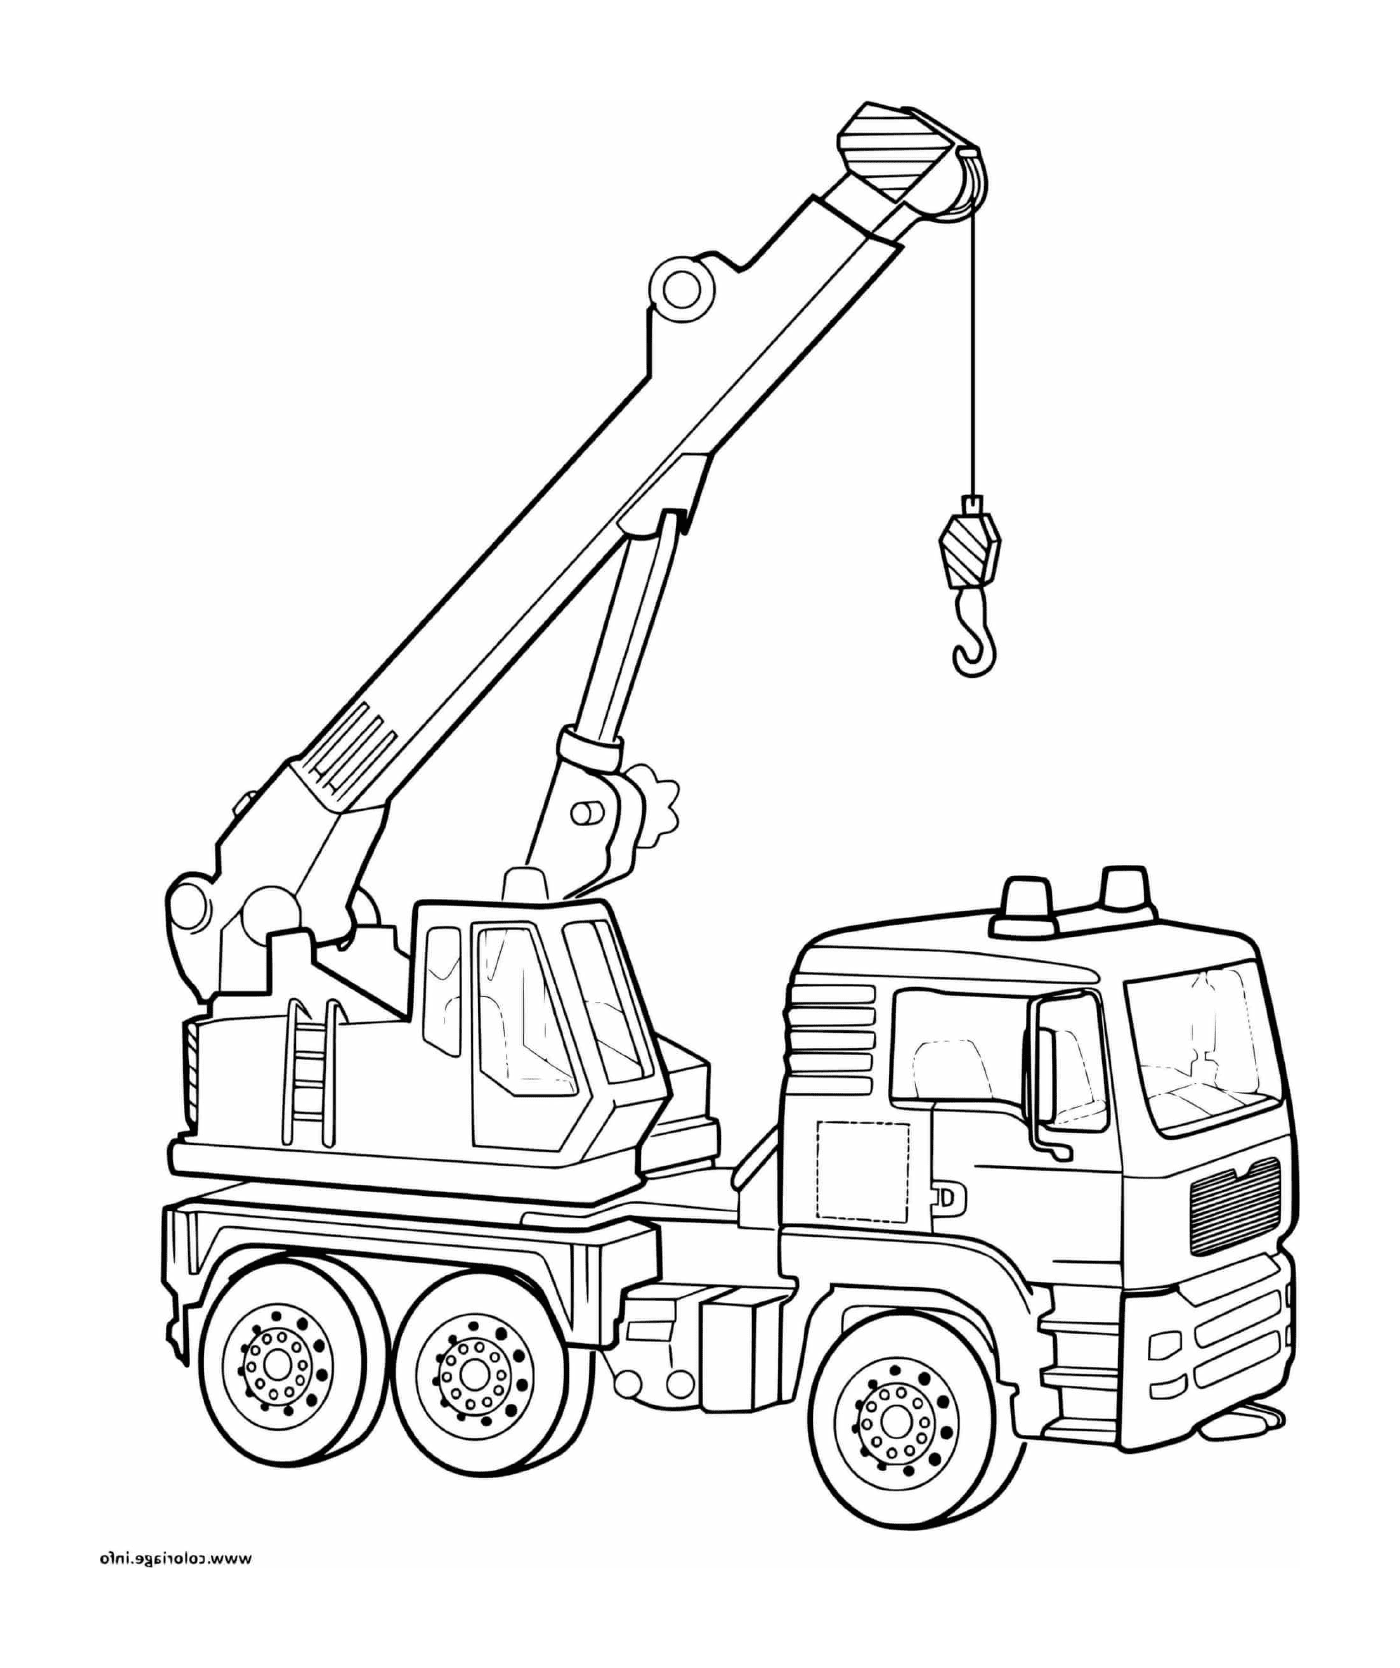  شاحنة رافعة مستخدمة في موقع بناء 